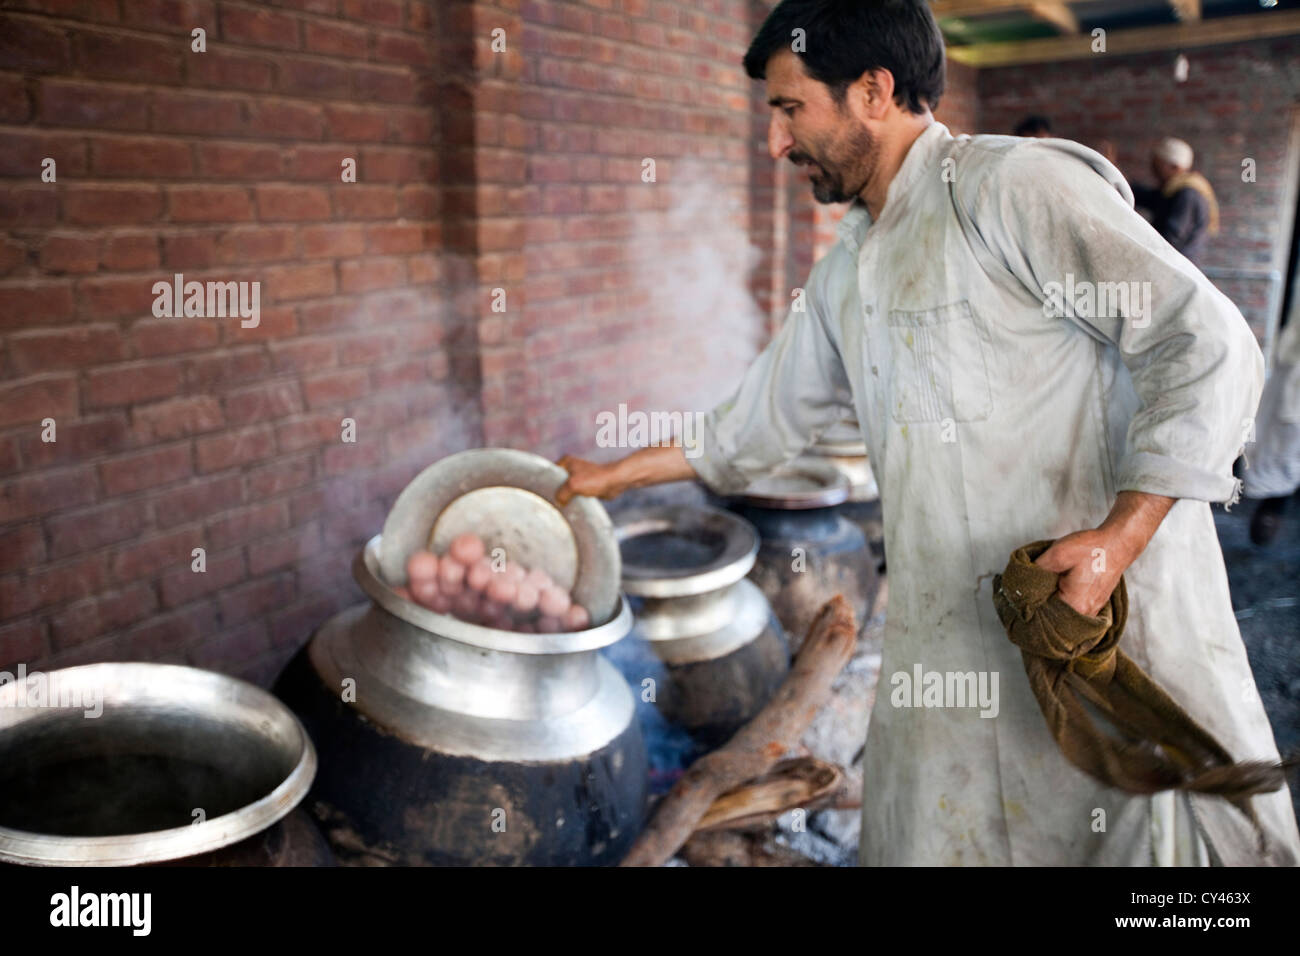 Eine Waza oder Kochen in der kaschmirischen Tradition Tipps Lamm Kugeln in einen Topf geben, wie er Nahrung für ein traditionelles Wazwan fest bereitet. Stockfoto